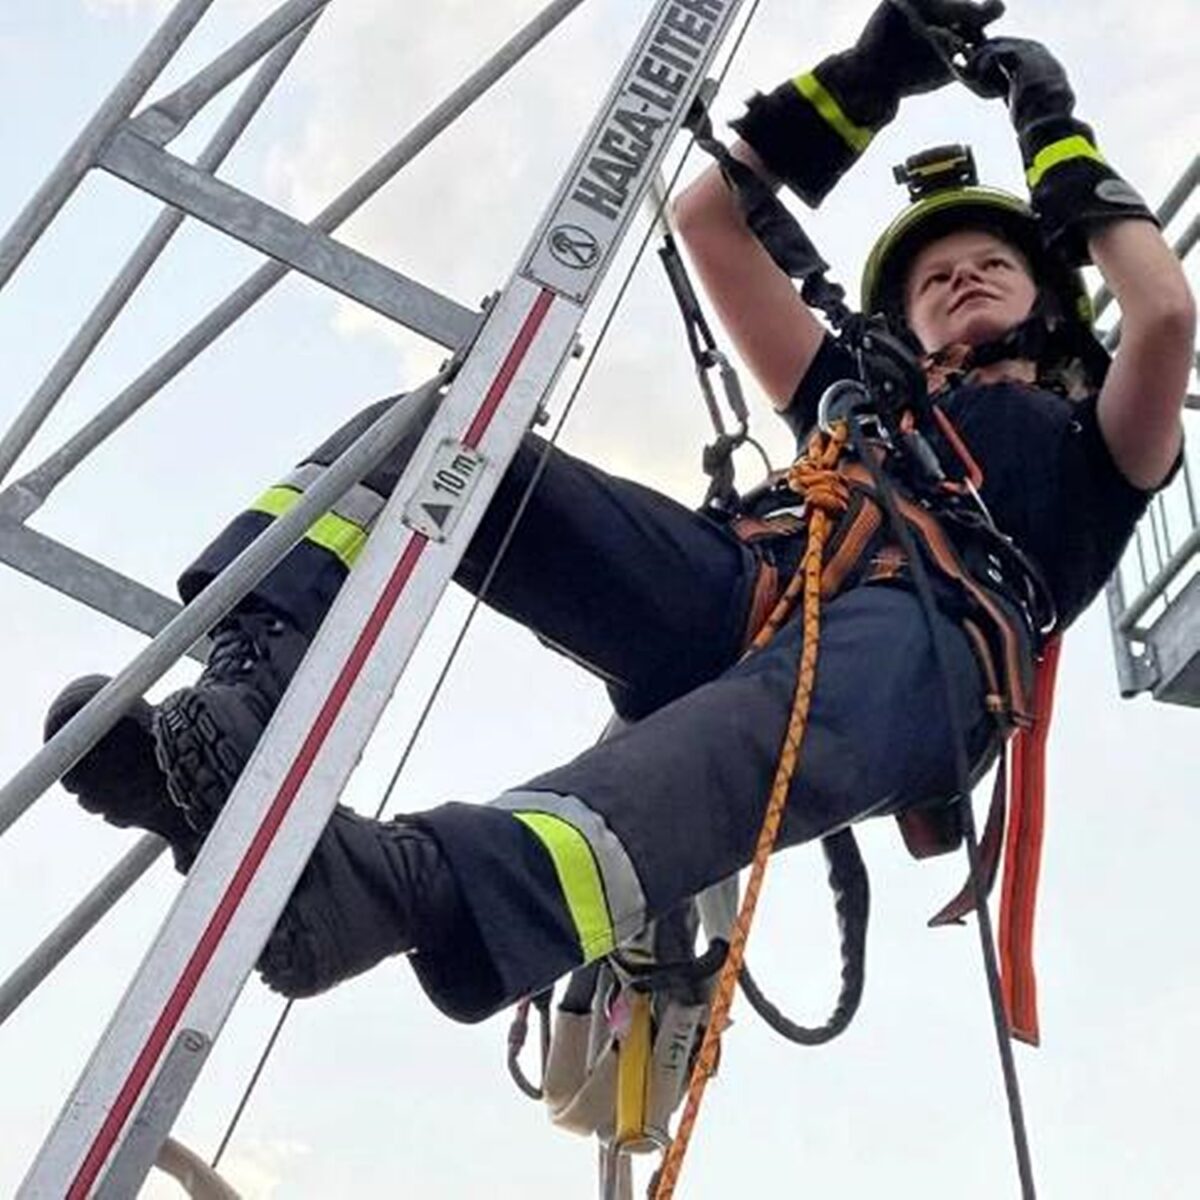 Das Highlight: Eine realitätsnahe Personenrettung von einem 15-Meter hohen Lastenkran. Bild: Feuerwehr Grafenwöhr